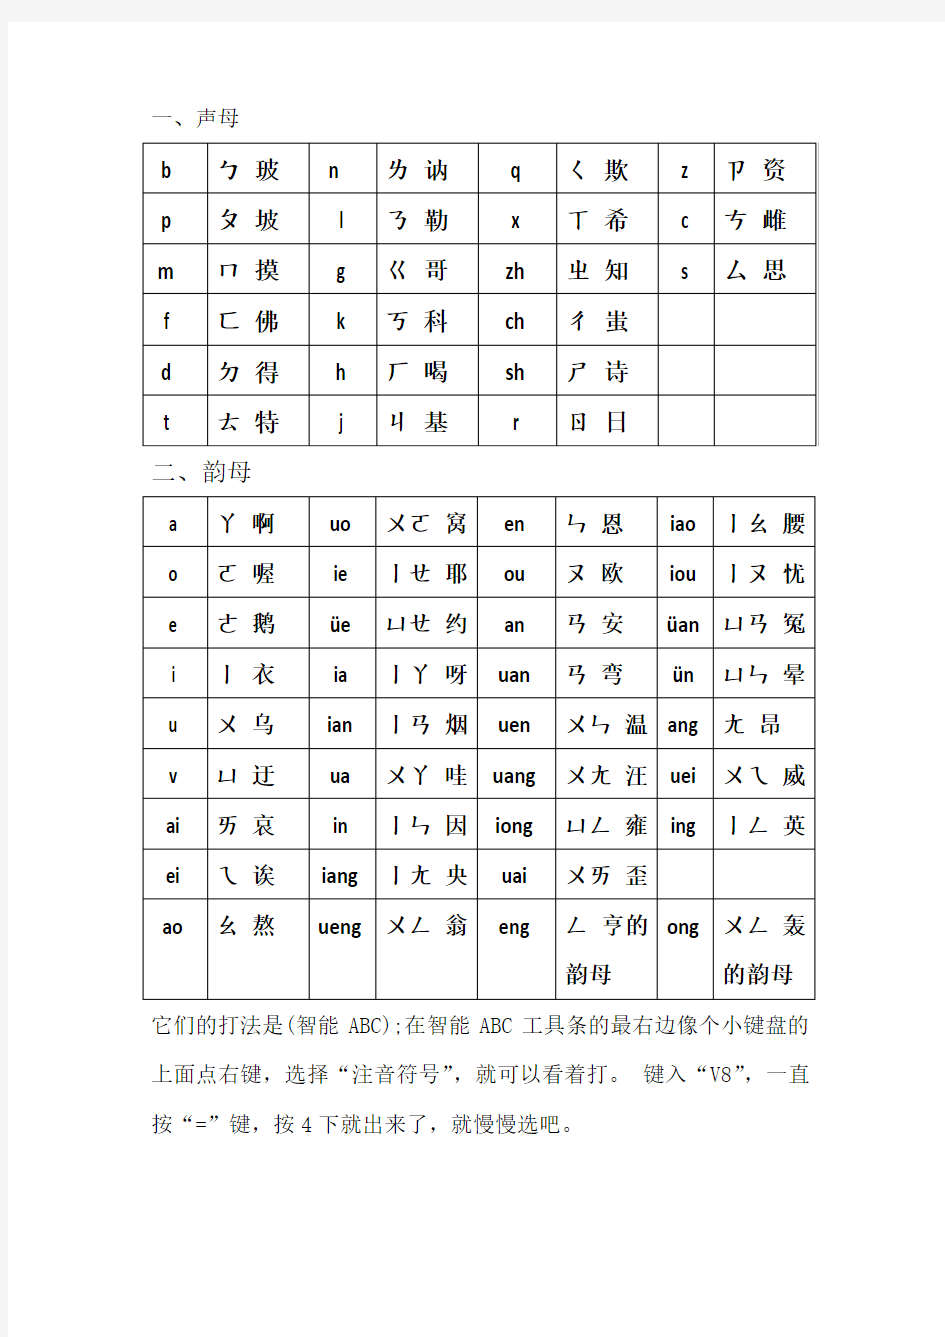 现代汉语拼音与繁体字汉语拼音表对照